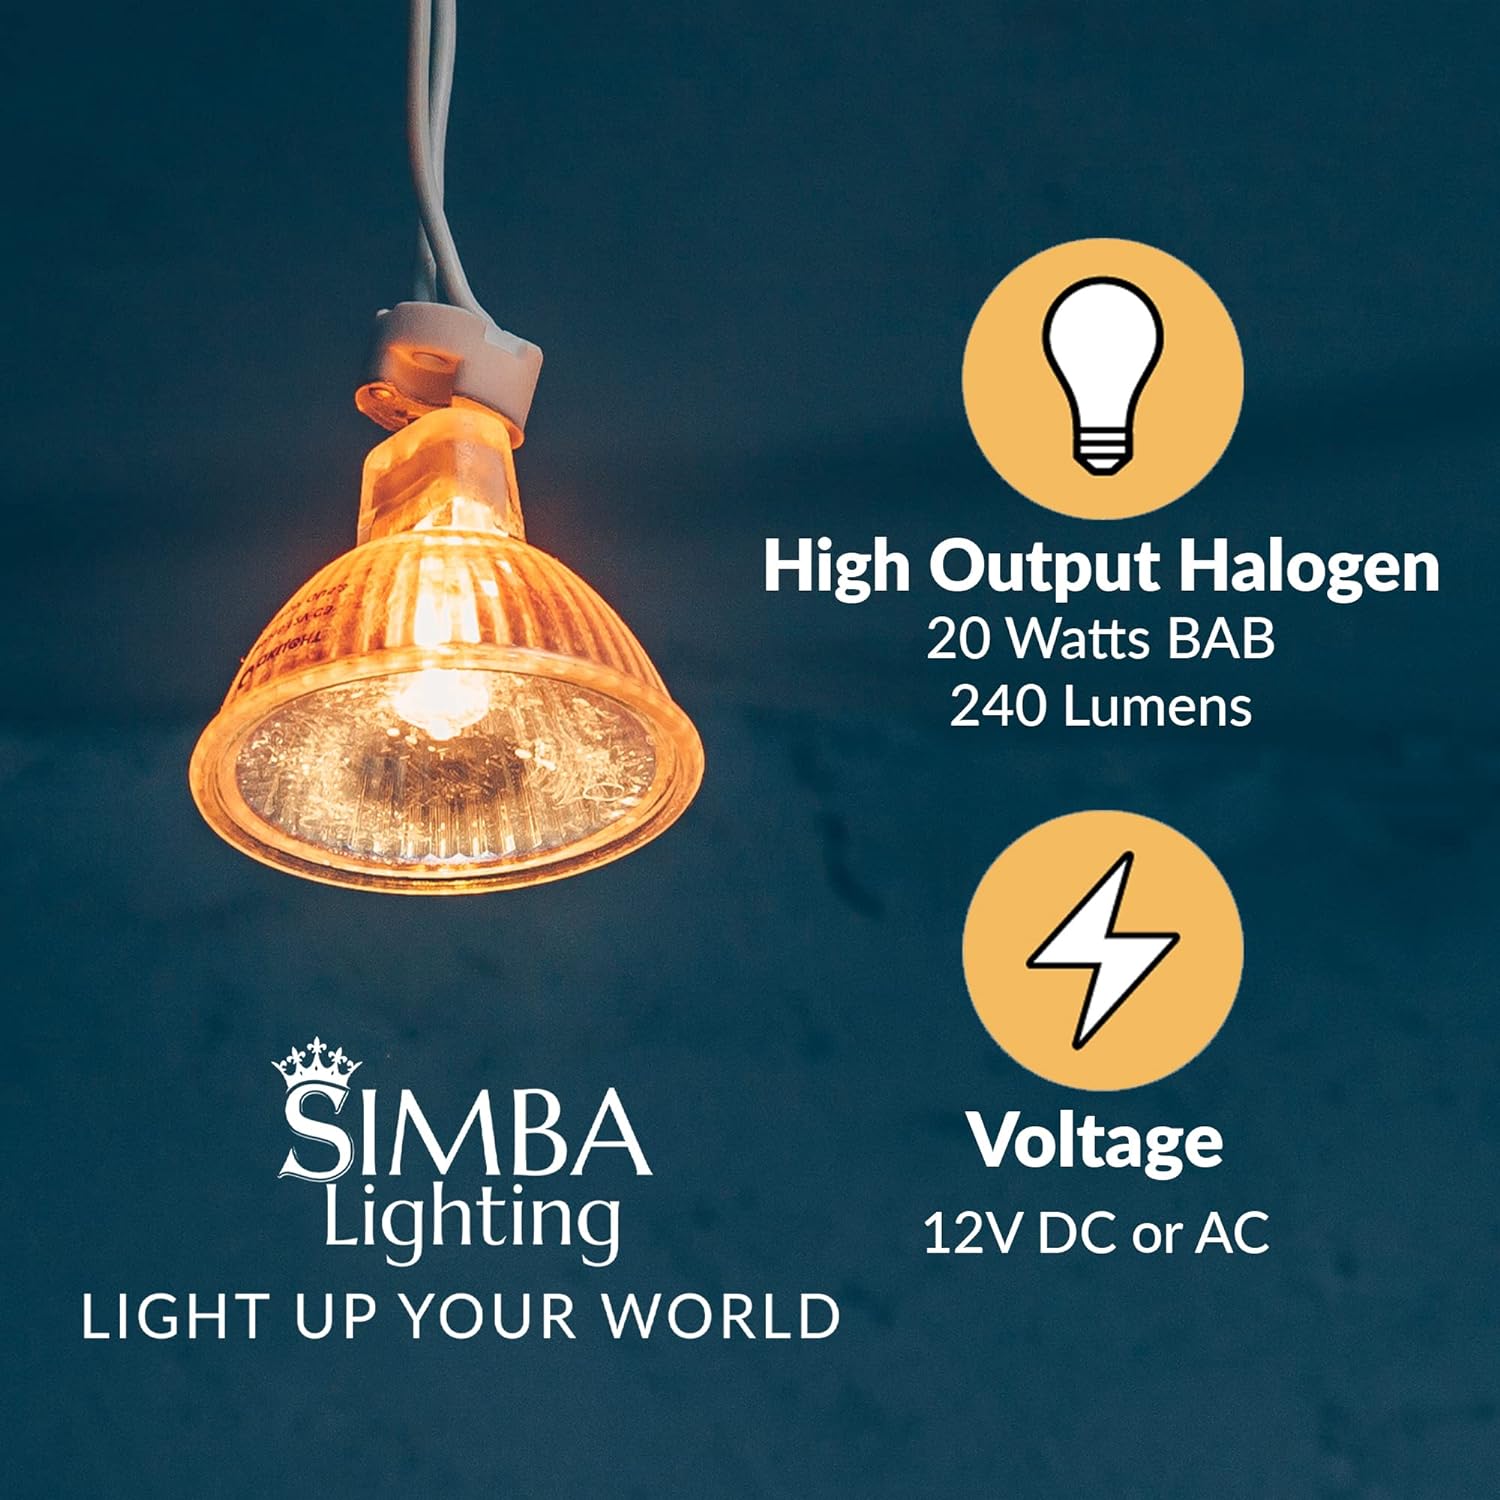 Simba Lighting Halogen MR16 20W 12V Light Bulbs 6 Pack Review